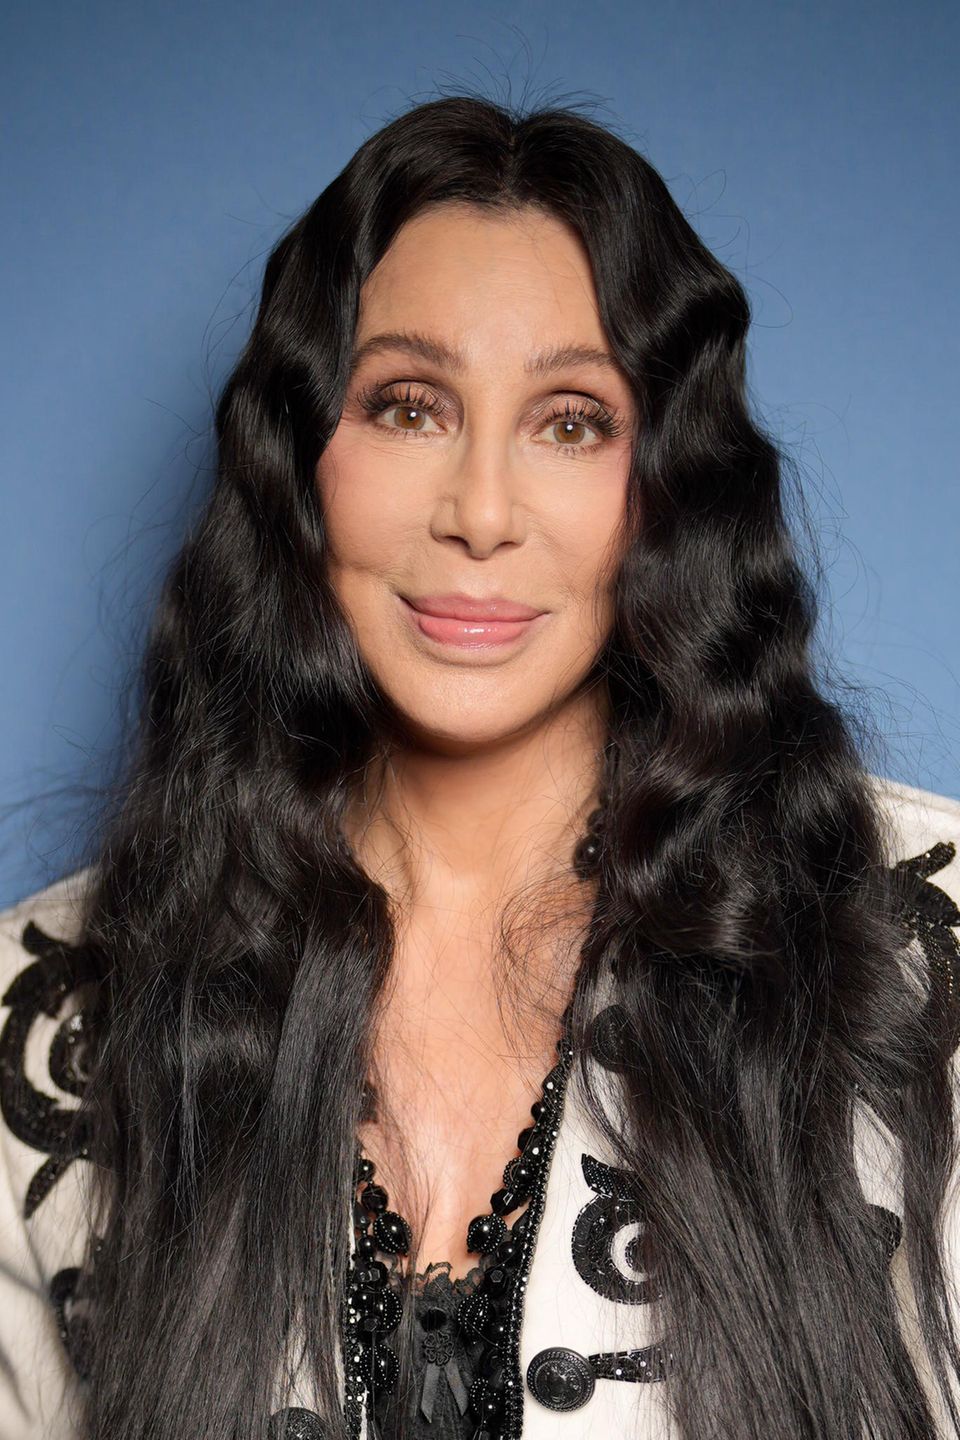 Können Sie glauben, dass Cher schon 77 Jahre alt ist? Zumindest Teile von ihr. Die sympathische Sängerin scherzt selbst regelmäßig über ihre zahlreichen Operationen und Botox-Eingriffe, kann sich dank dieser jedoch auch über pralle Wangen und eine faltenfreie Stirn freuen. Eines ist über die Jahre aber definitiv echt geblieben: ihr Talent, Menschen zu unterhalten. Ihre letzte Tour ist gerade mal zwei Jahre her. 